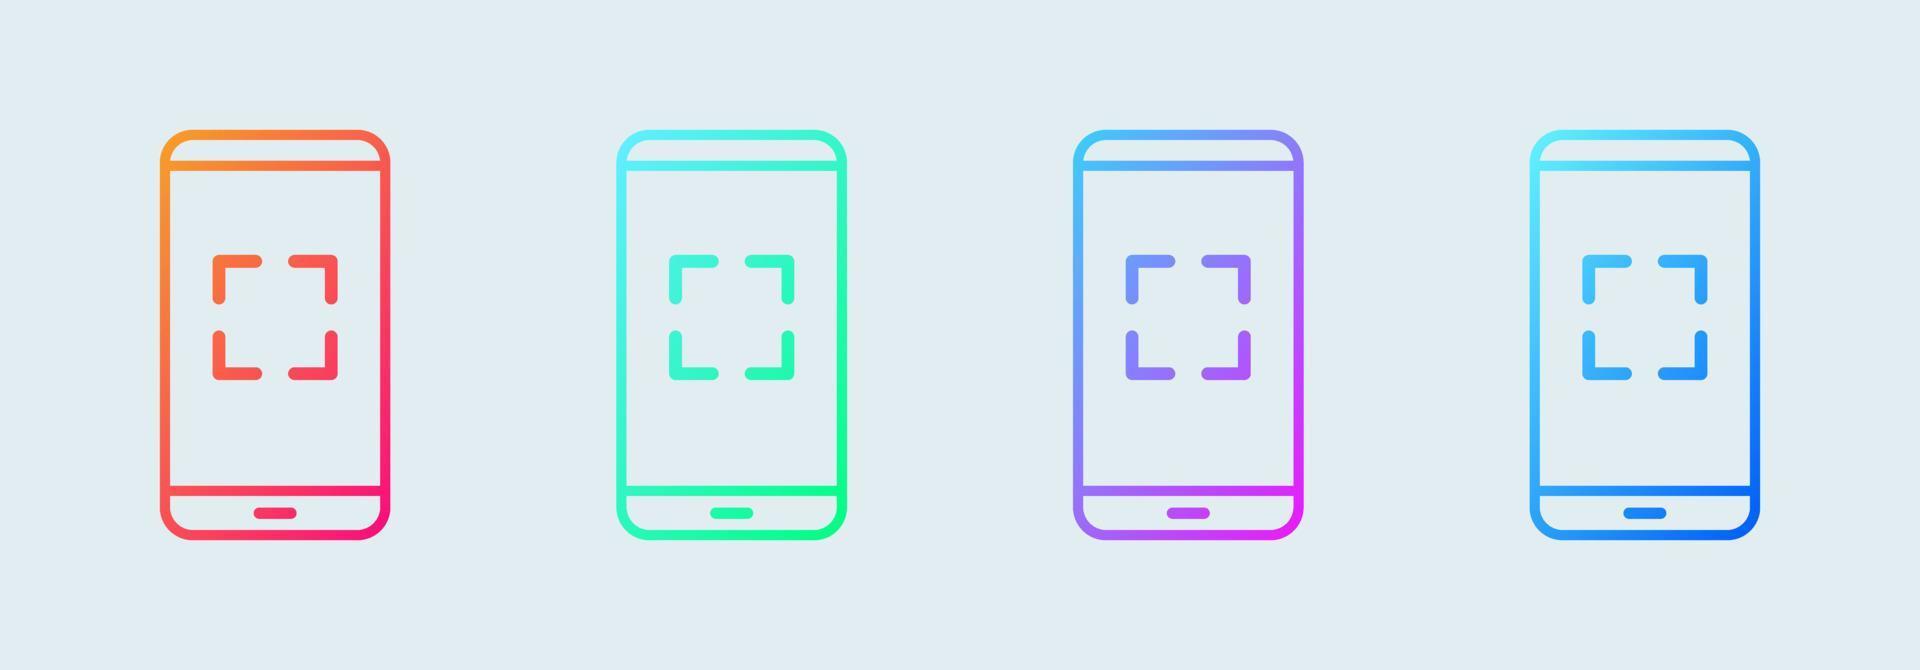 icona di scansione dello smartphone o del telefono in colori sfumati. illustrazione vettoriale del telefono cellulare.